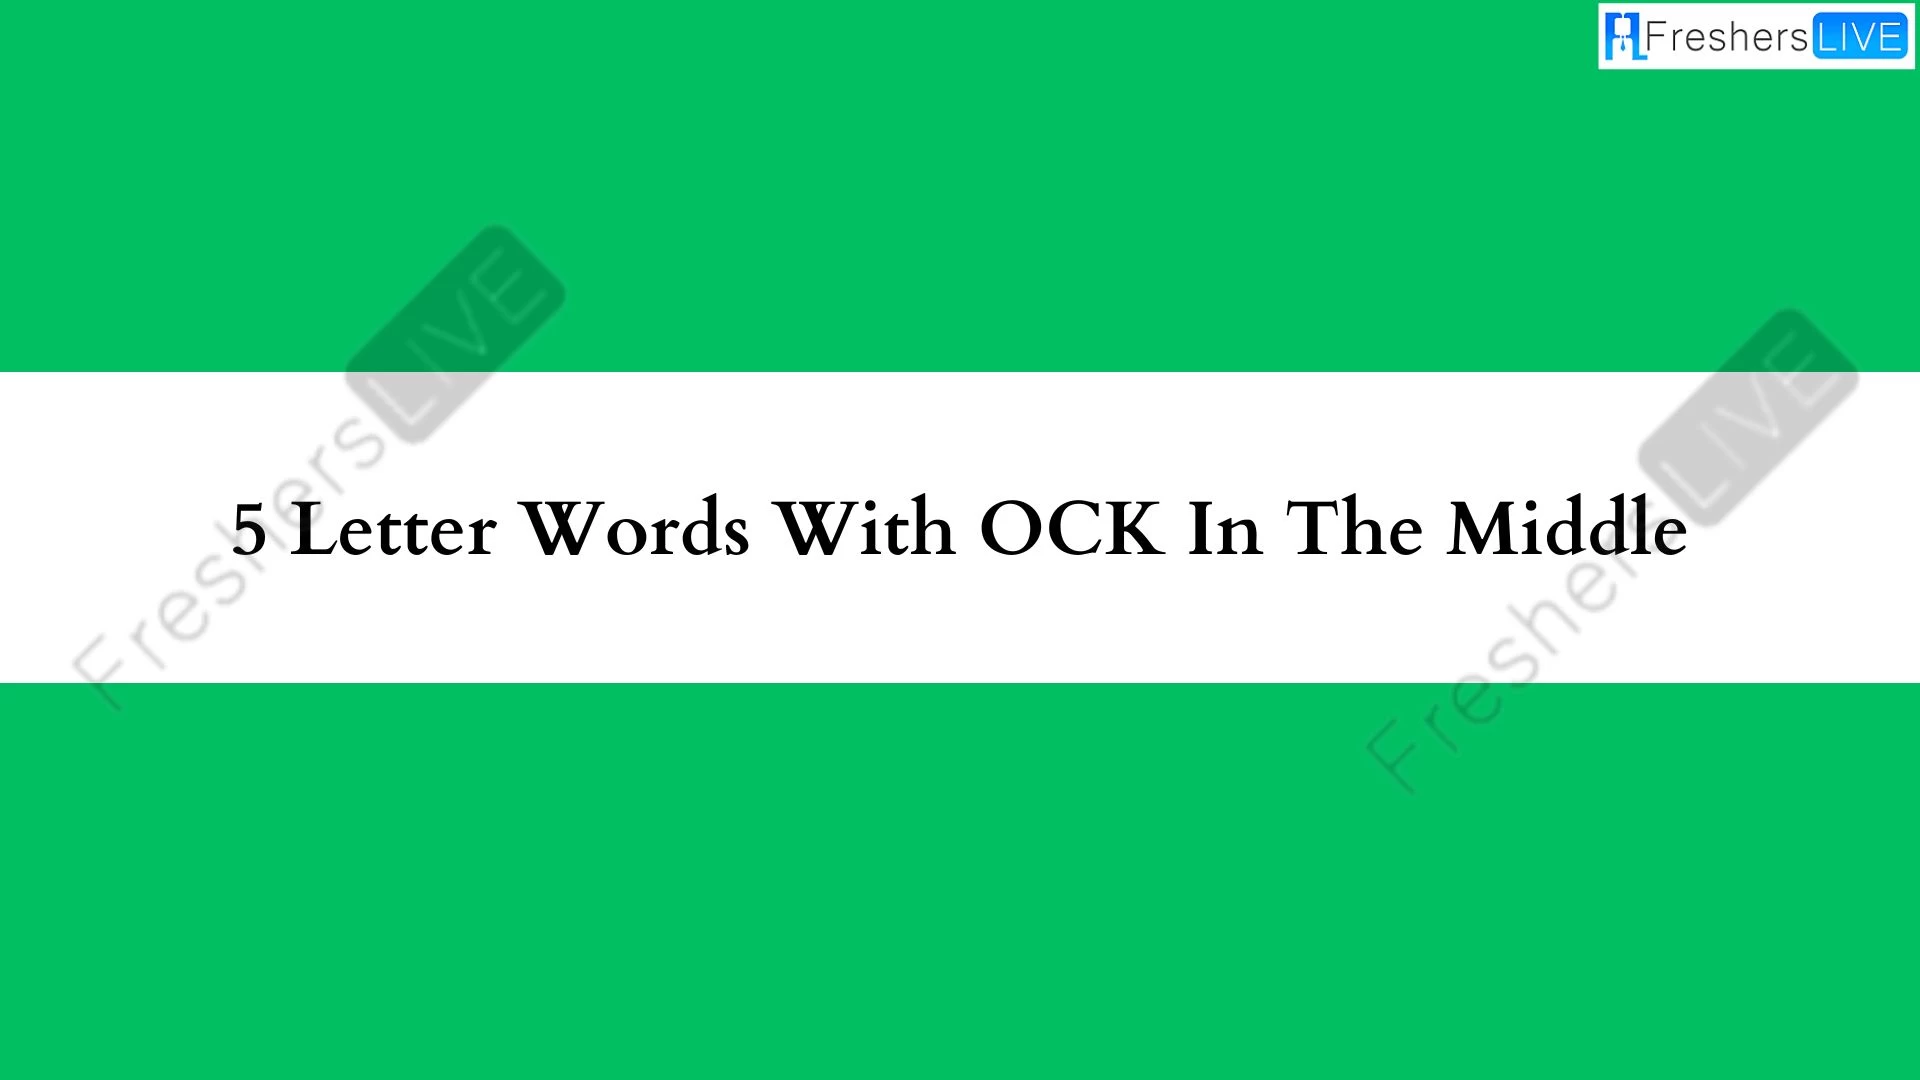 5 - Palabras formadas por letras con OCK en el medio.  Lista de todas las palabras.